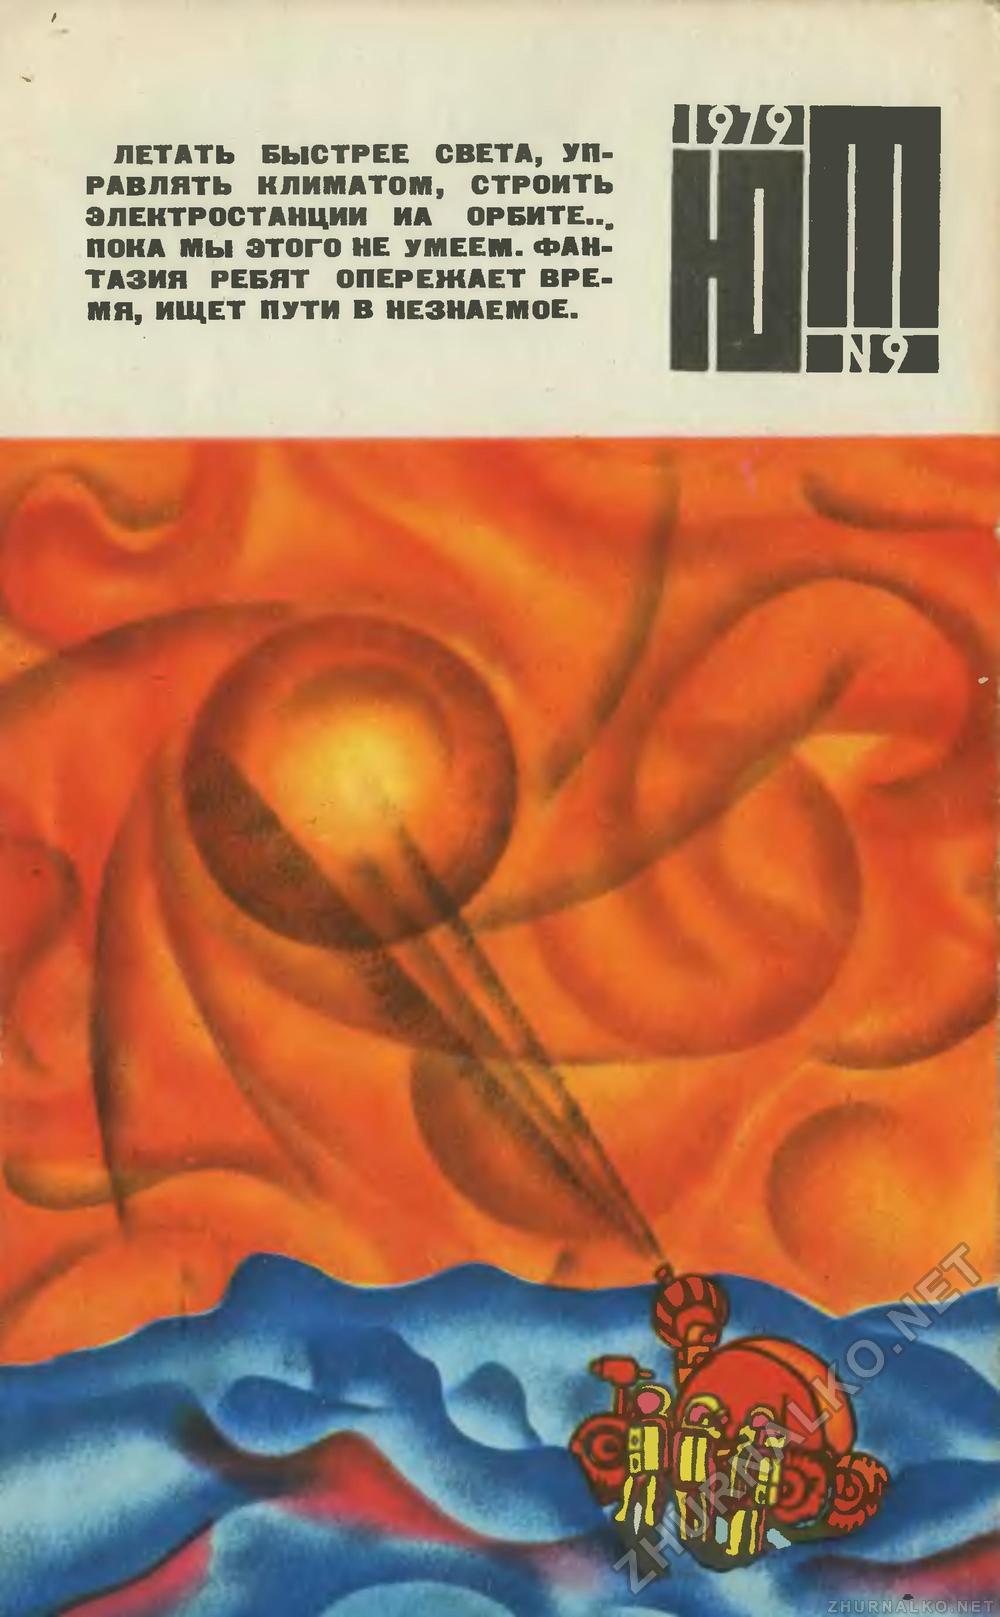   1979-09,  1